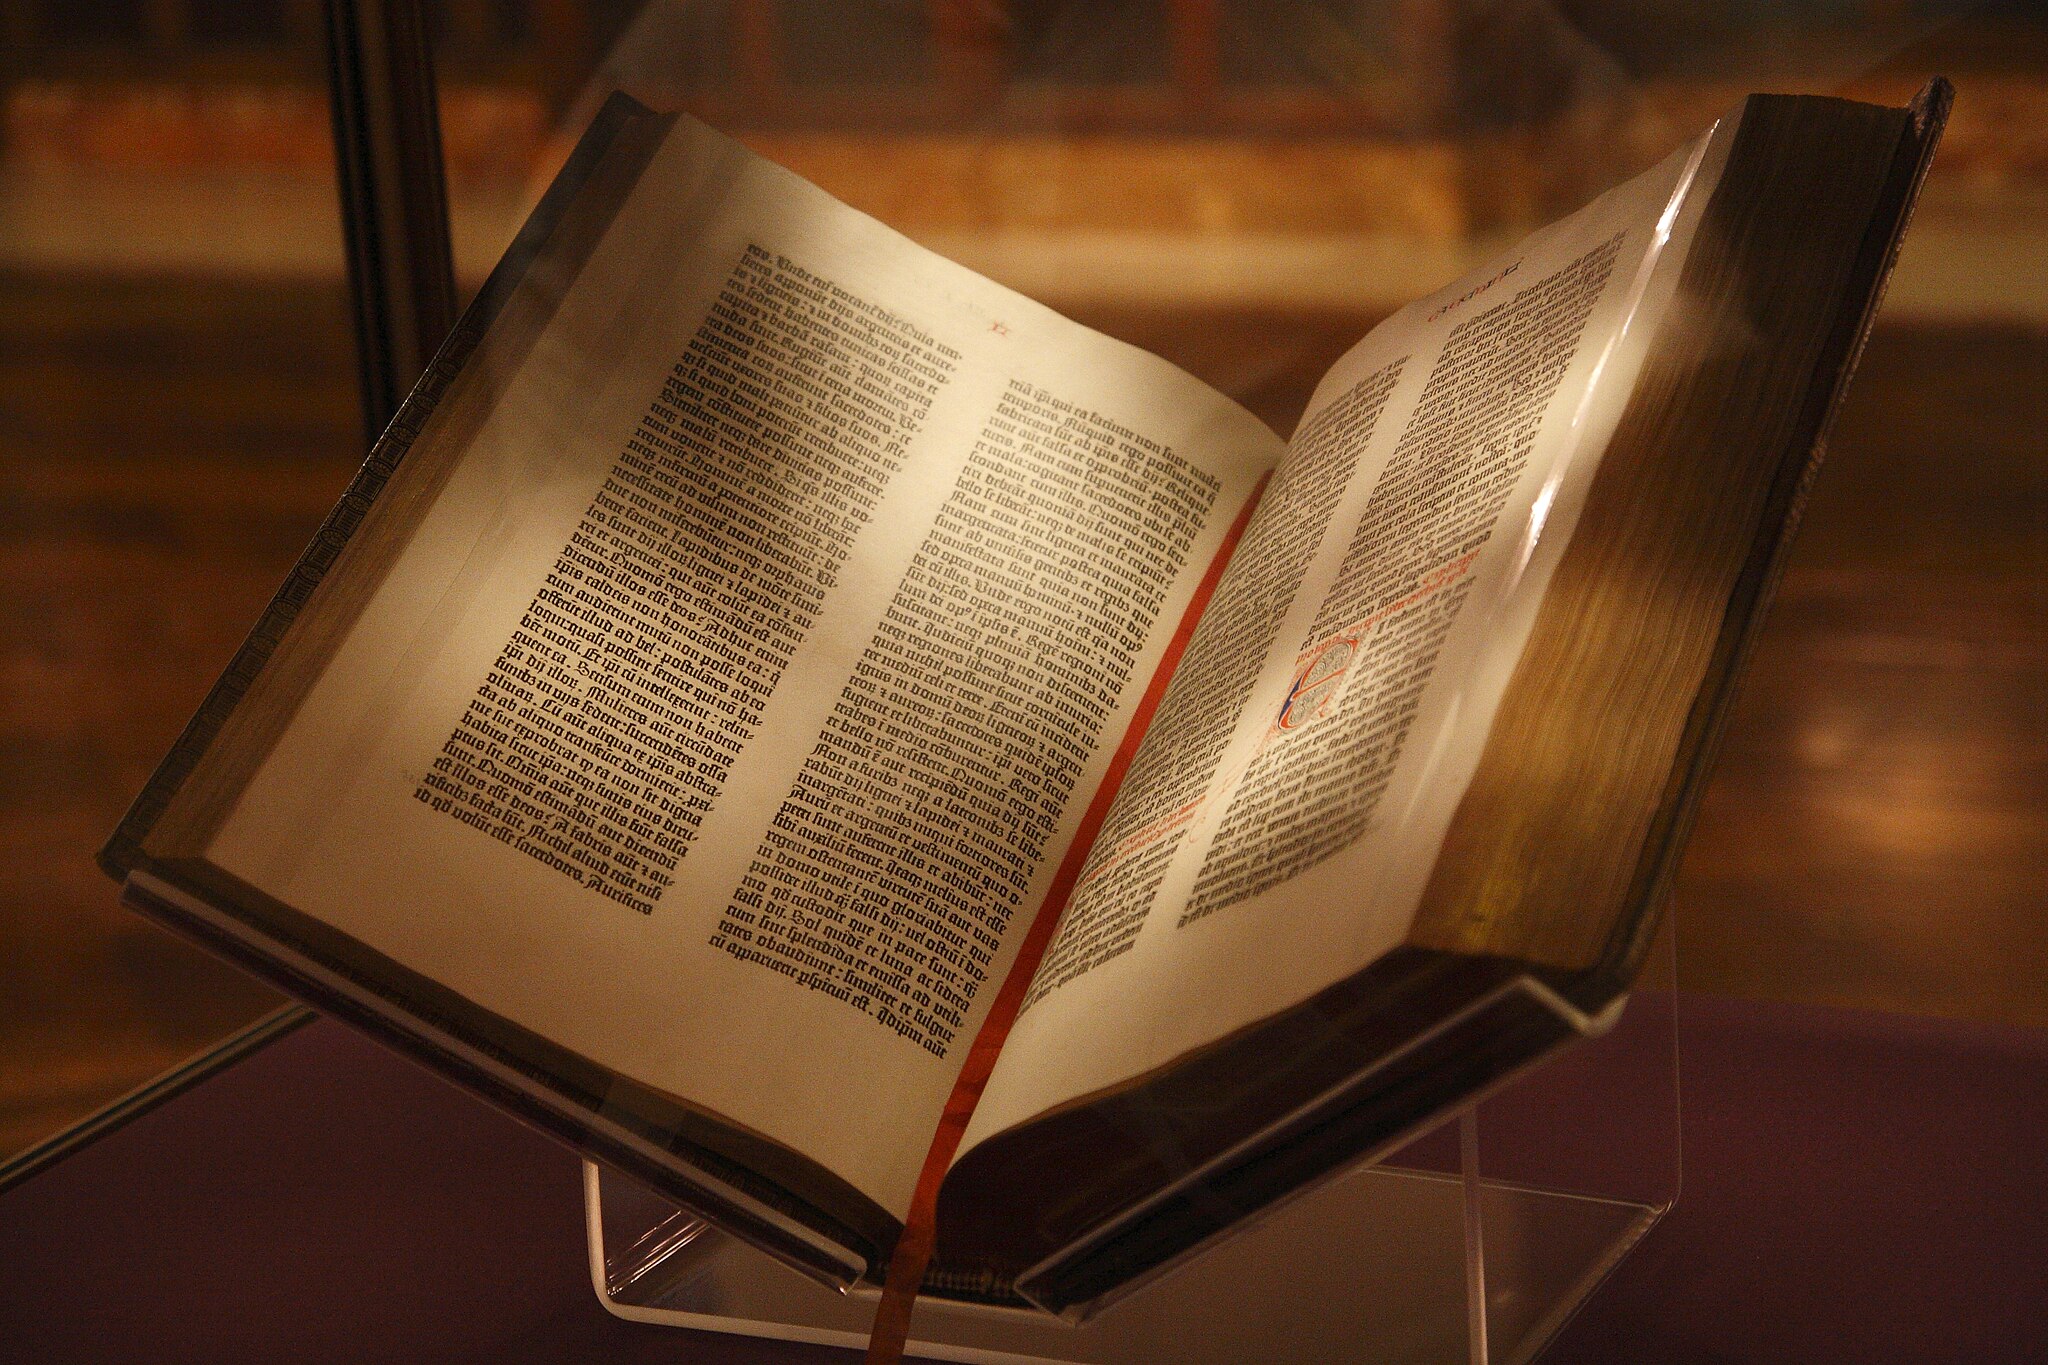 Ejemplar de la Biblia de Gutenberg, que es parte de archivo de la Biblioteca Pública de Nueva York, Estados Unidos. Foto: Joshua Keller/CC BY 2.0 - Wikimedia Commons.